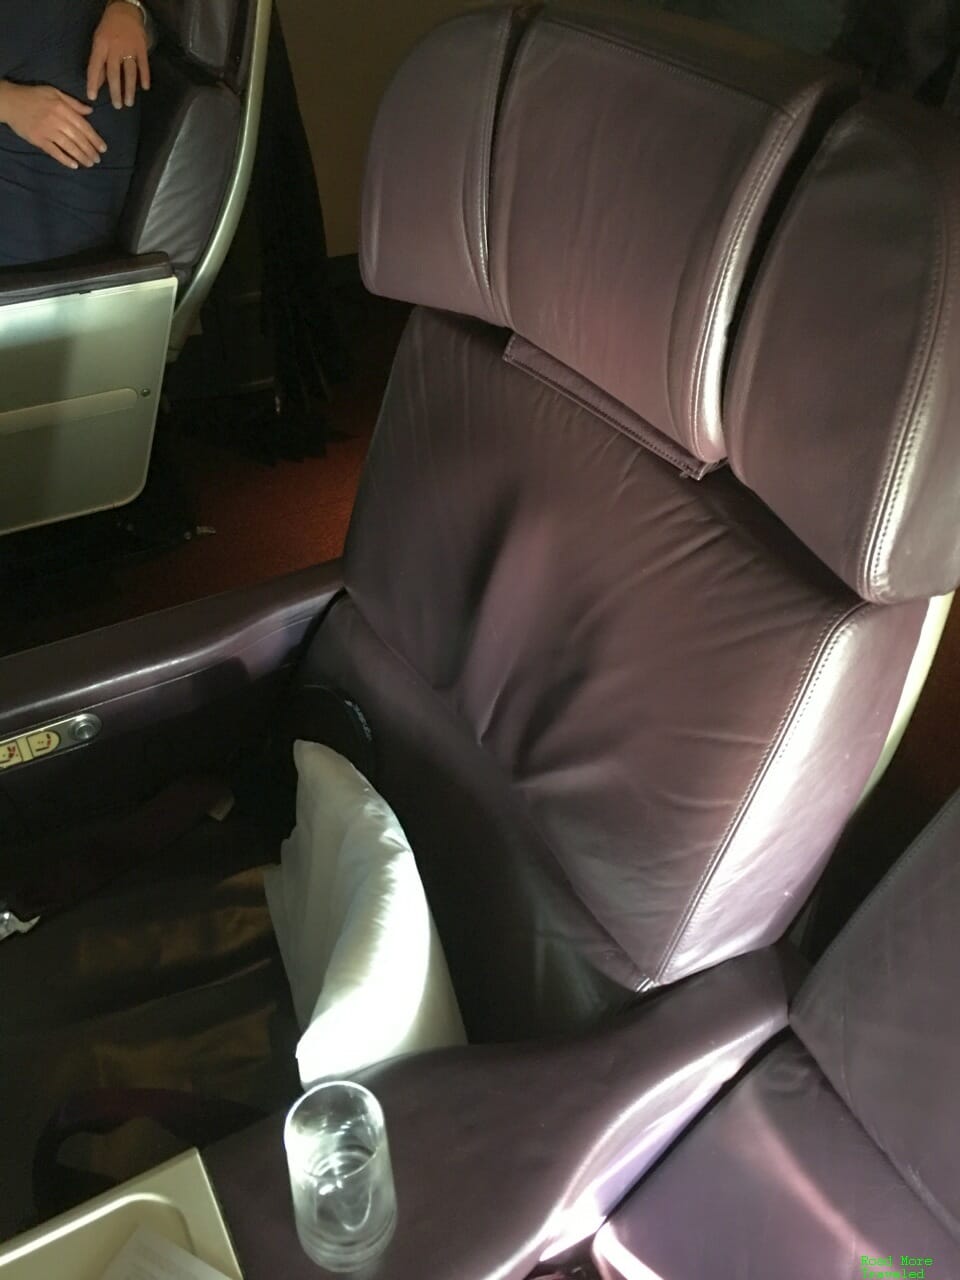 Virgin Atlantic B747 Premium Economy - seat